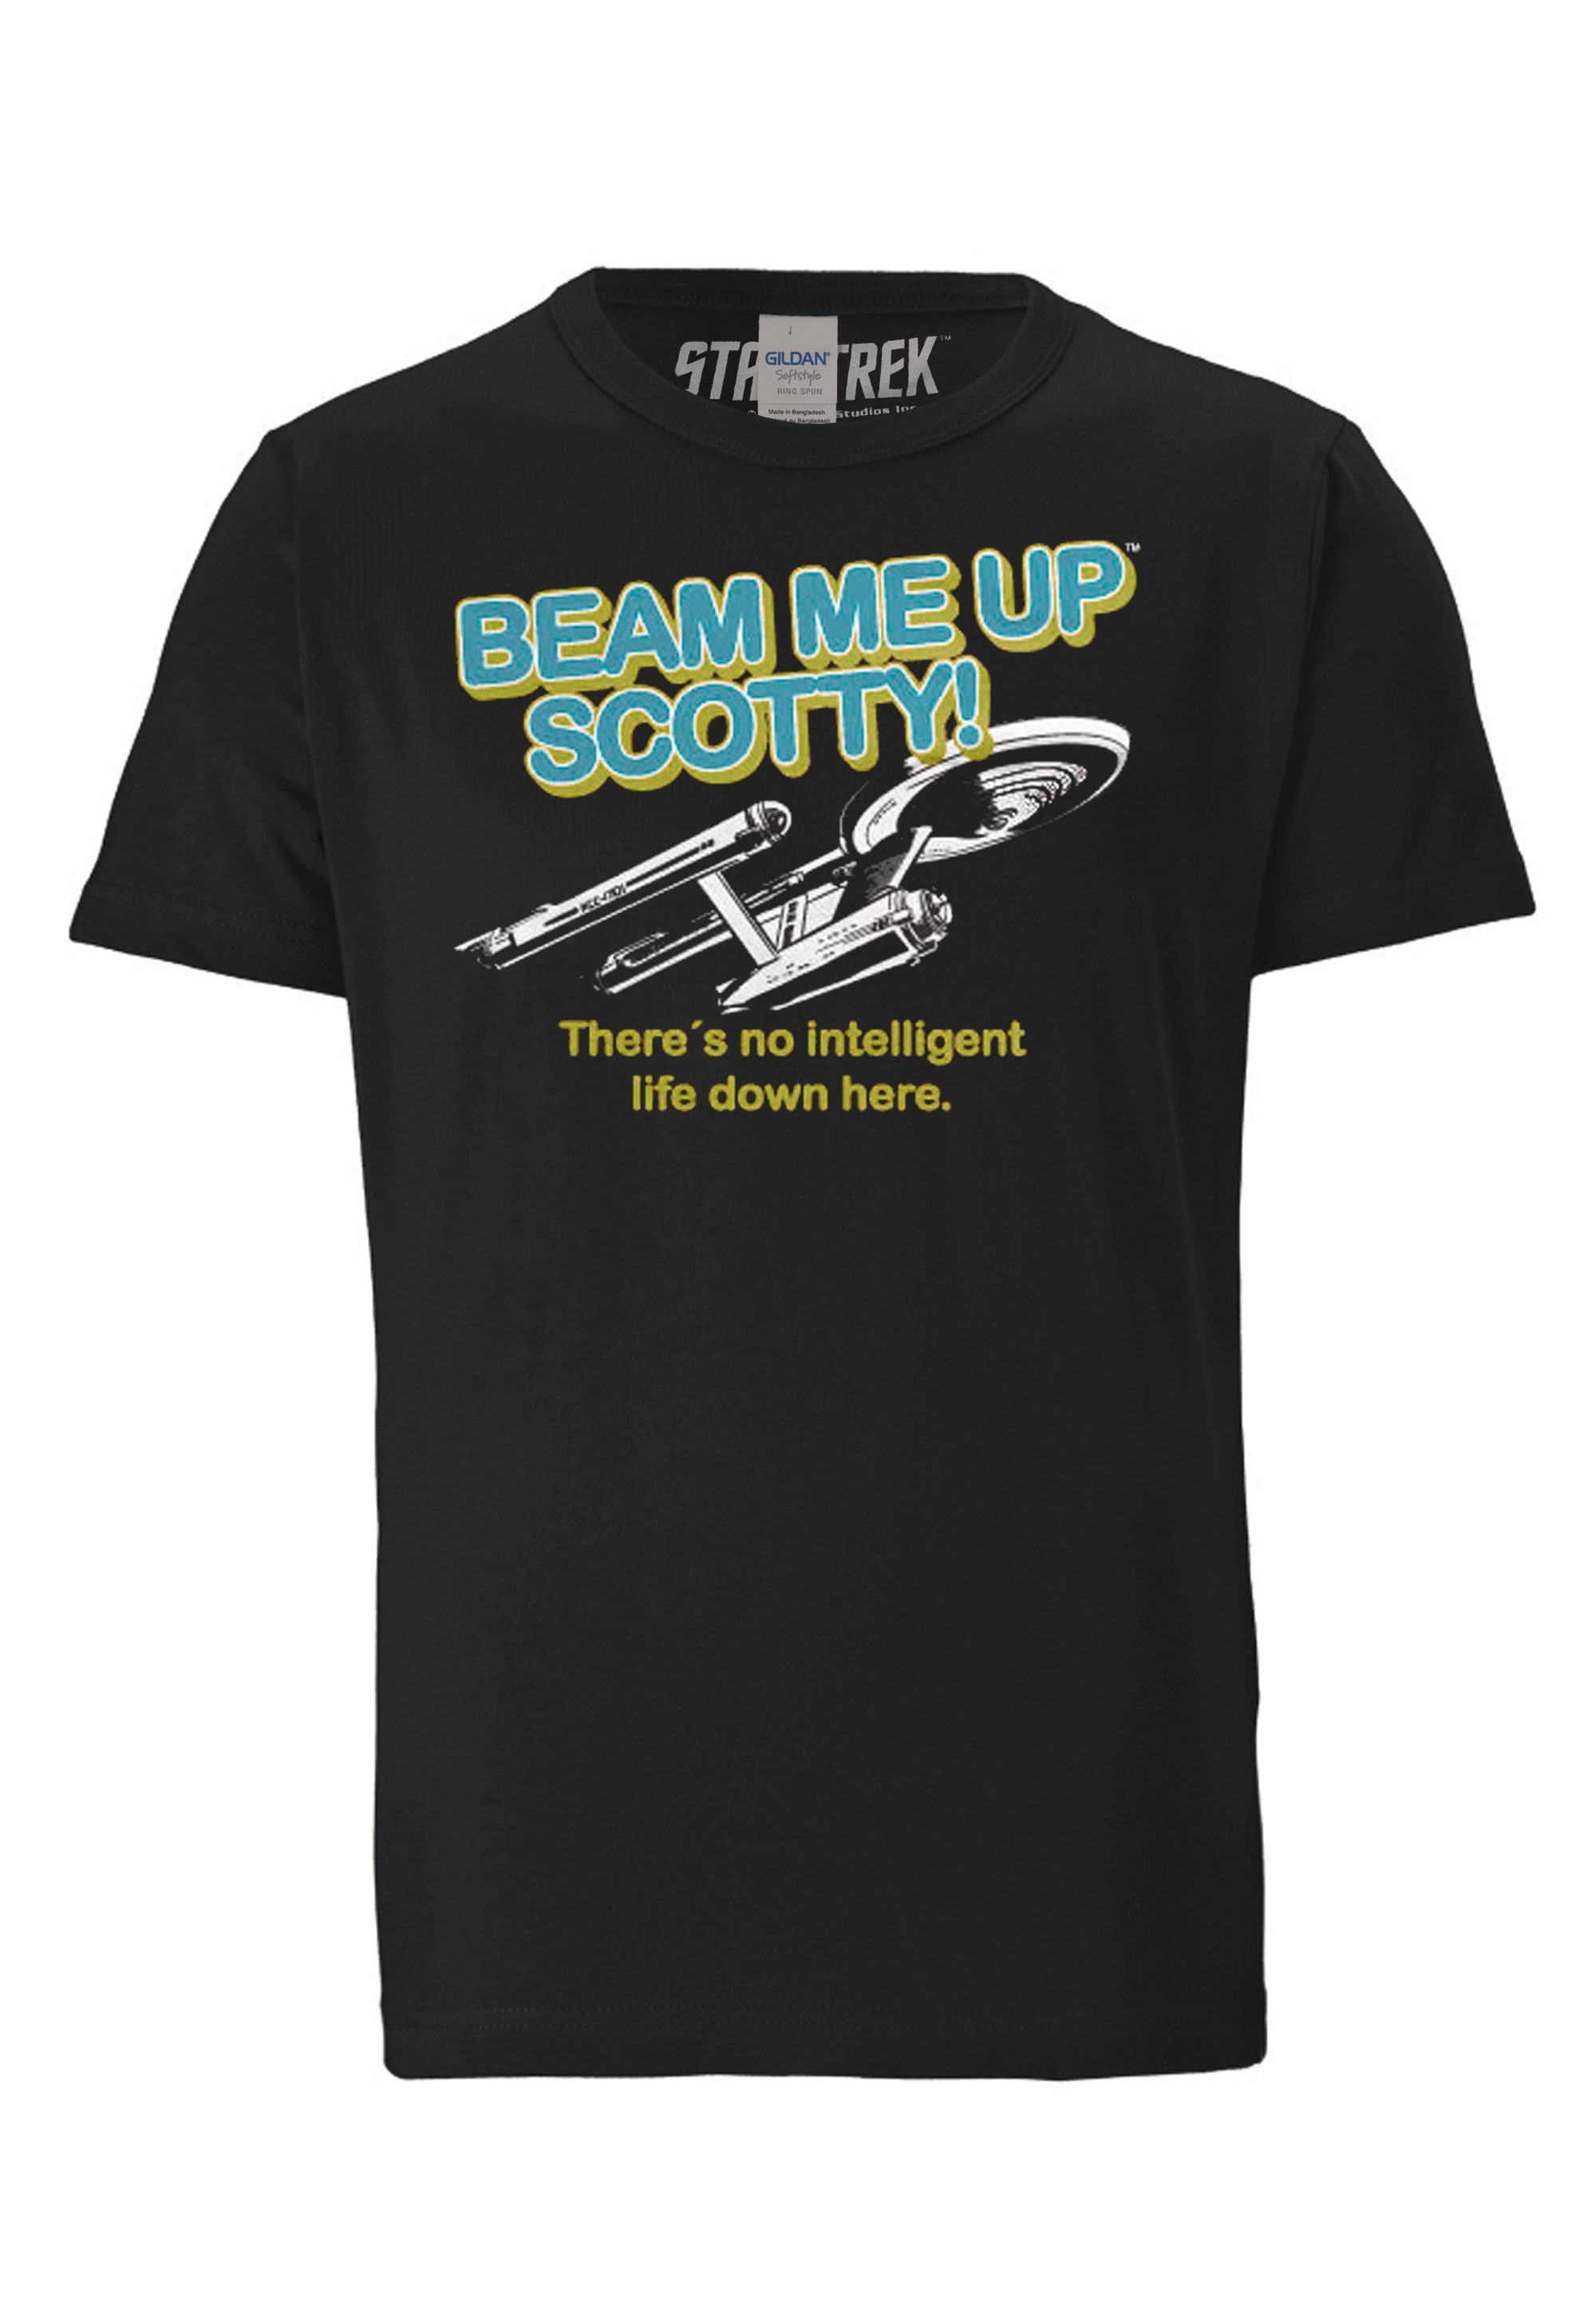 LOGOSHIRT T-Shirt »Star Trek - Beam Me Up Scotty«, mit Beam Me Up Scotty-Logo